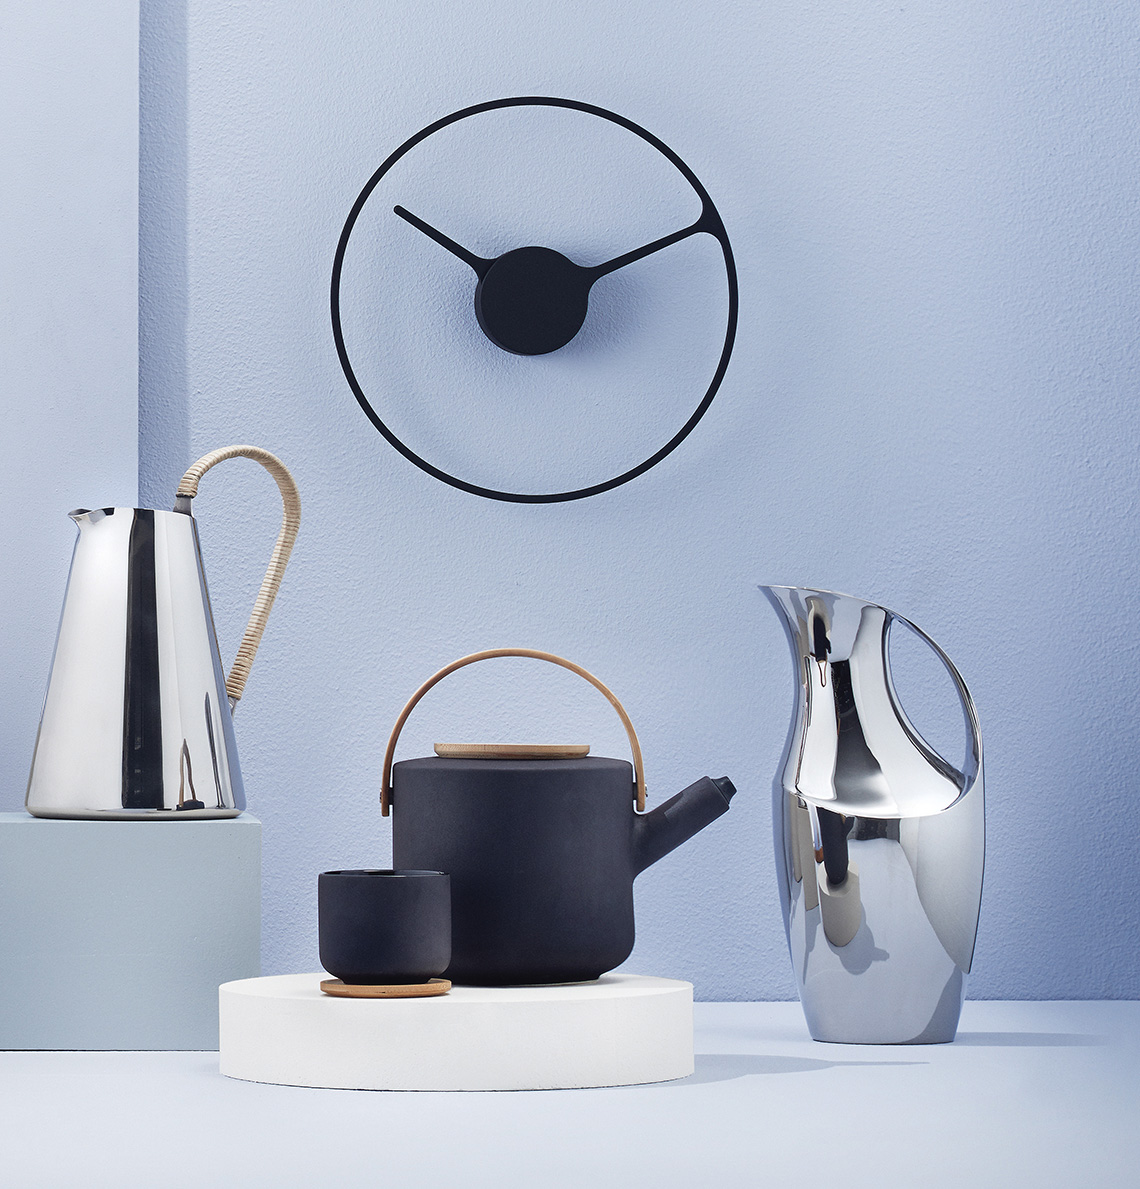 Designerski zaparzacz do herbaty - propozycja duńskiej marki Stelton